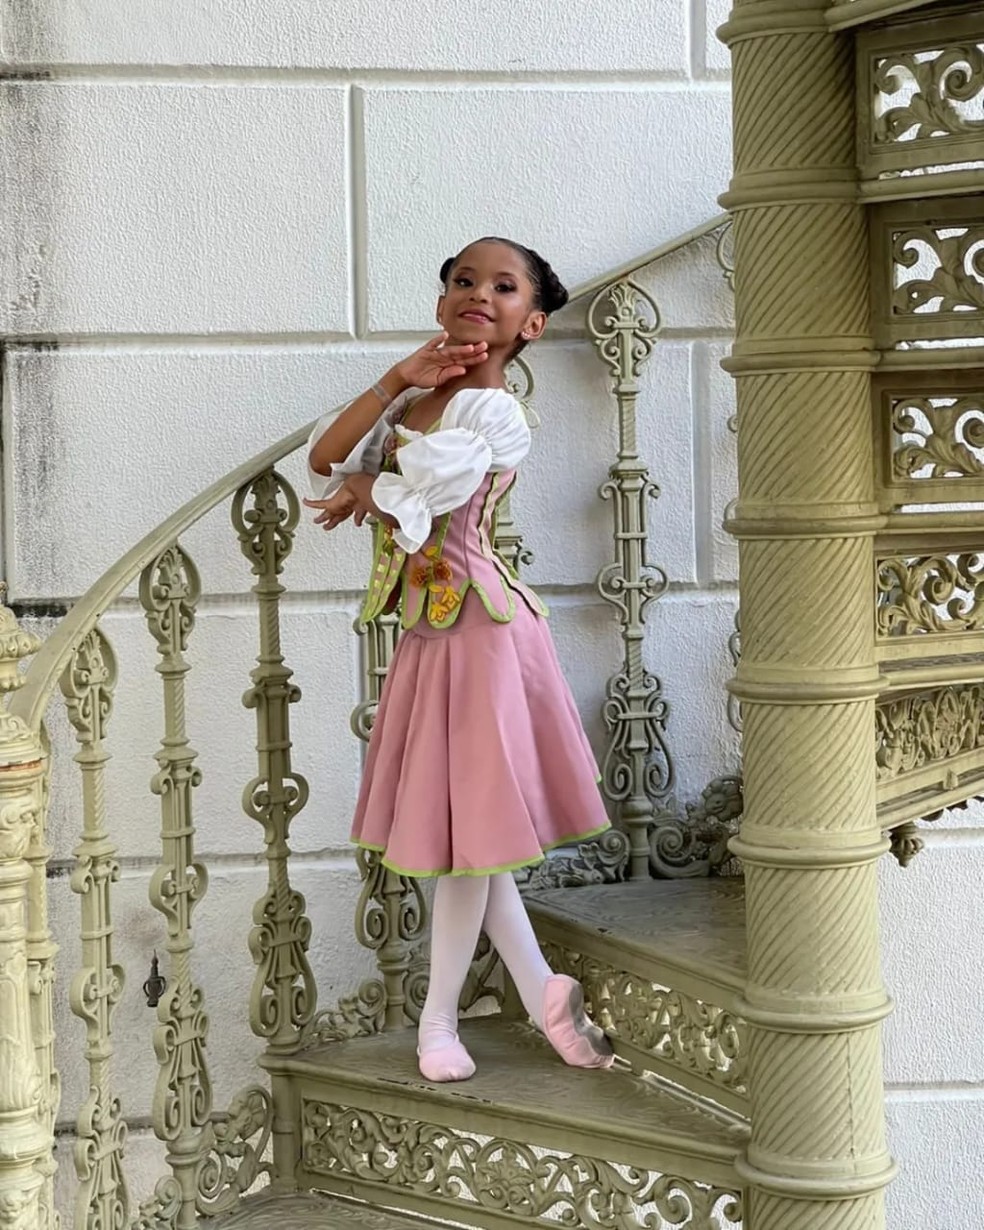 Izadora Guedes pratica balé desde os seis anos, em Fortaleza. — Foto: Arquivo pessoal